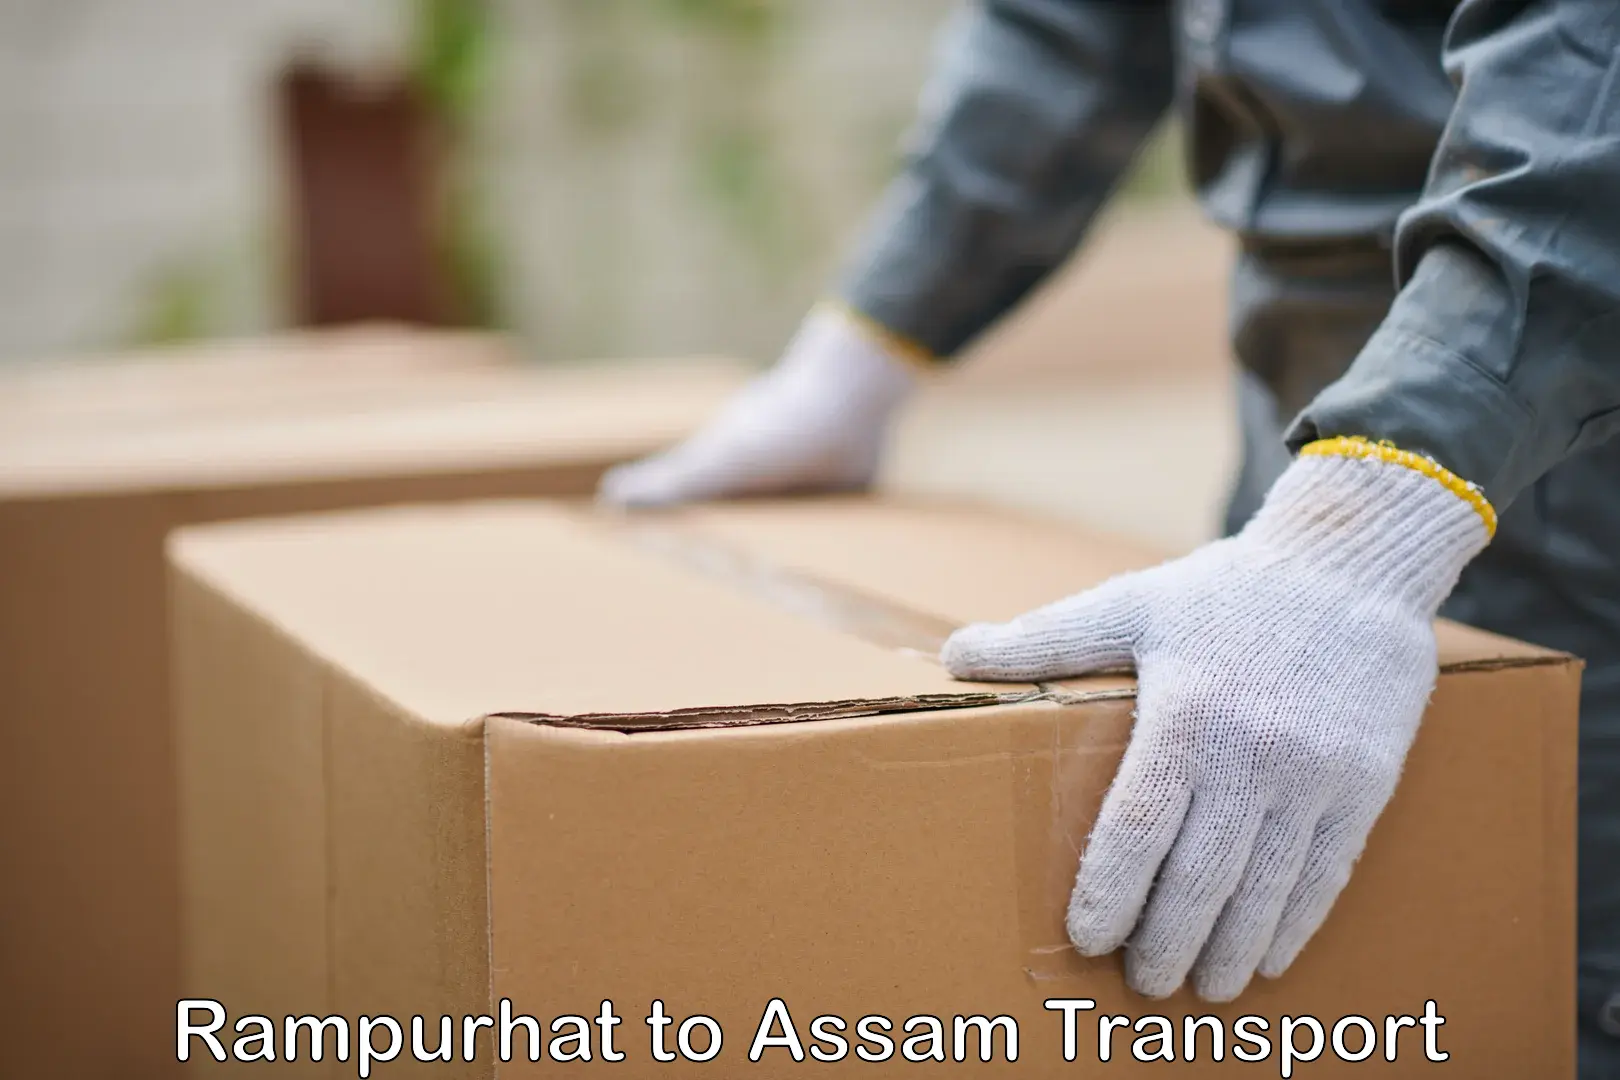 Furniture transport service Rampurhat to Tinsukia